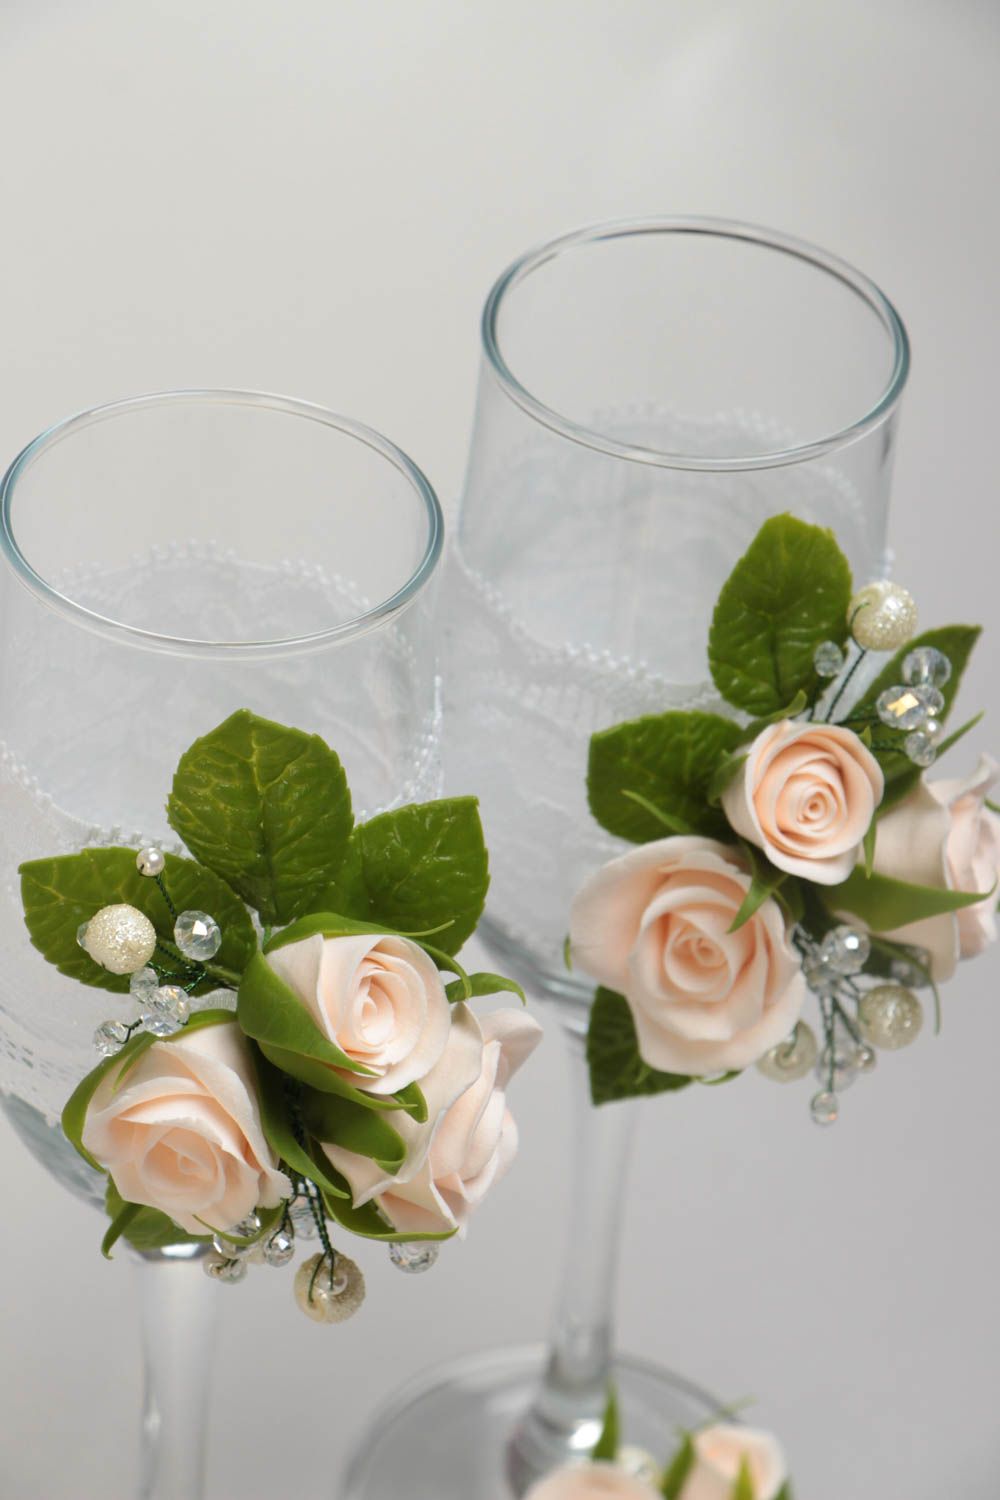 Бокалы на свадьбу с розами ручной работы красивые оригинальные 2 штуки фото 3